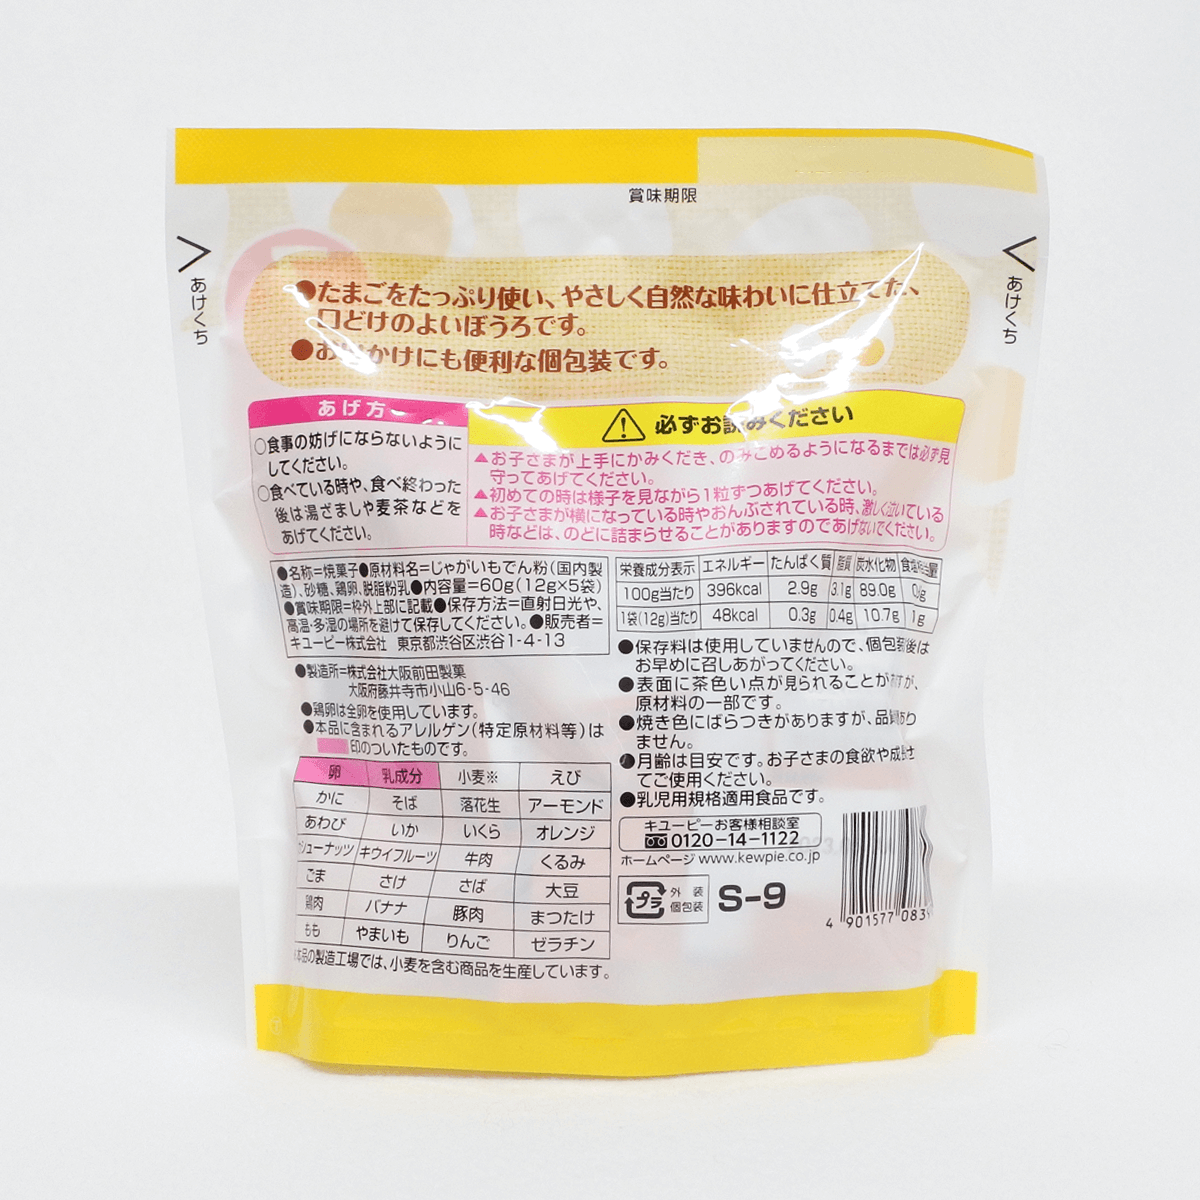 KEWPIE 寶寶燒菓子蛋酥(7個月以上) 12g×5袋